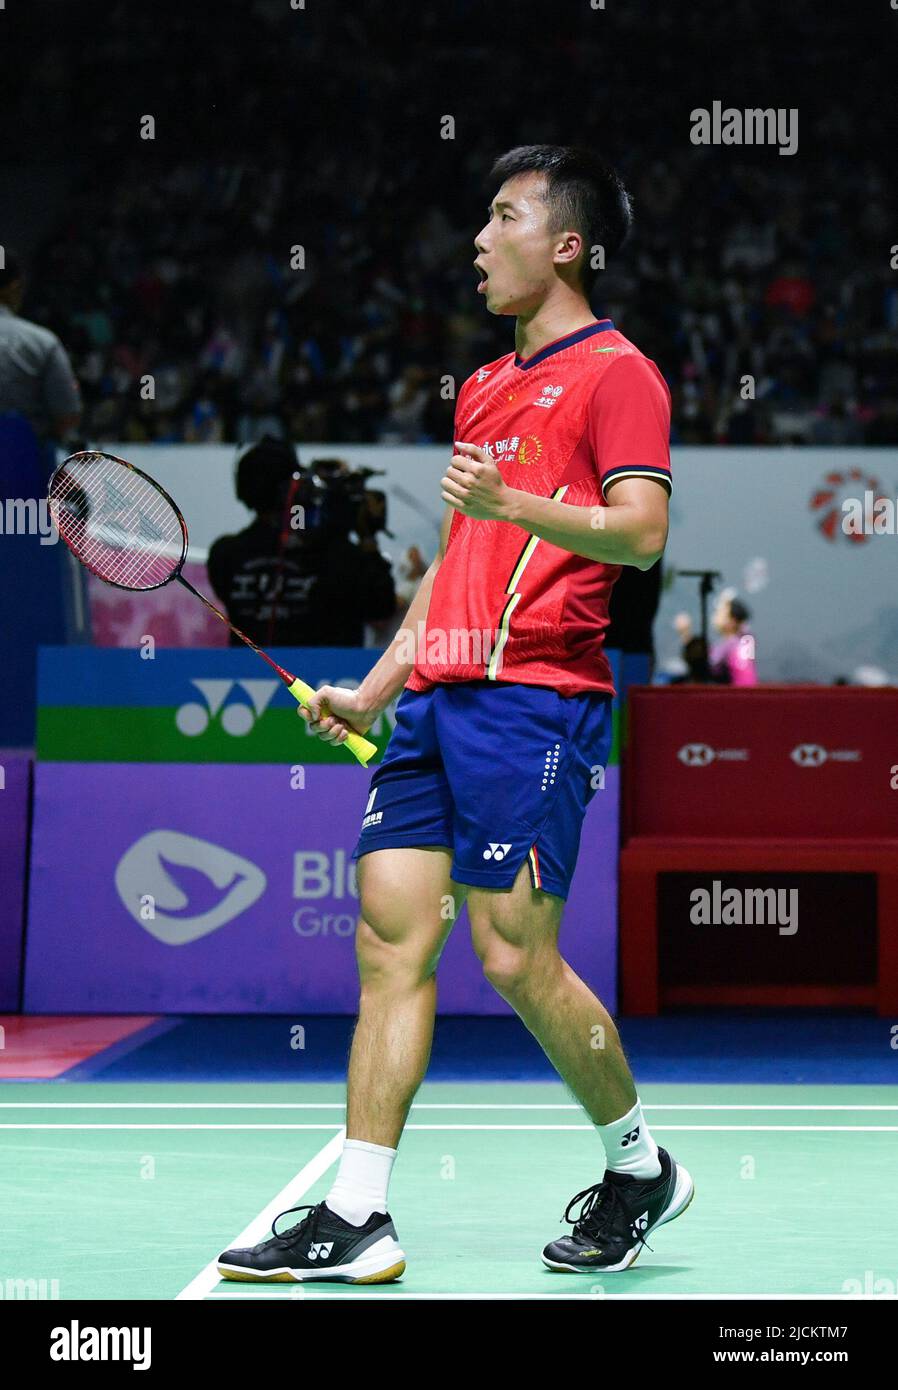 badminton indonesia open 2022 live